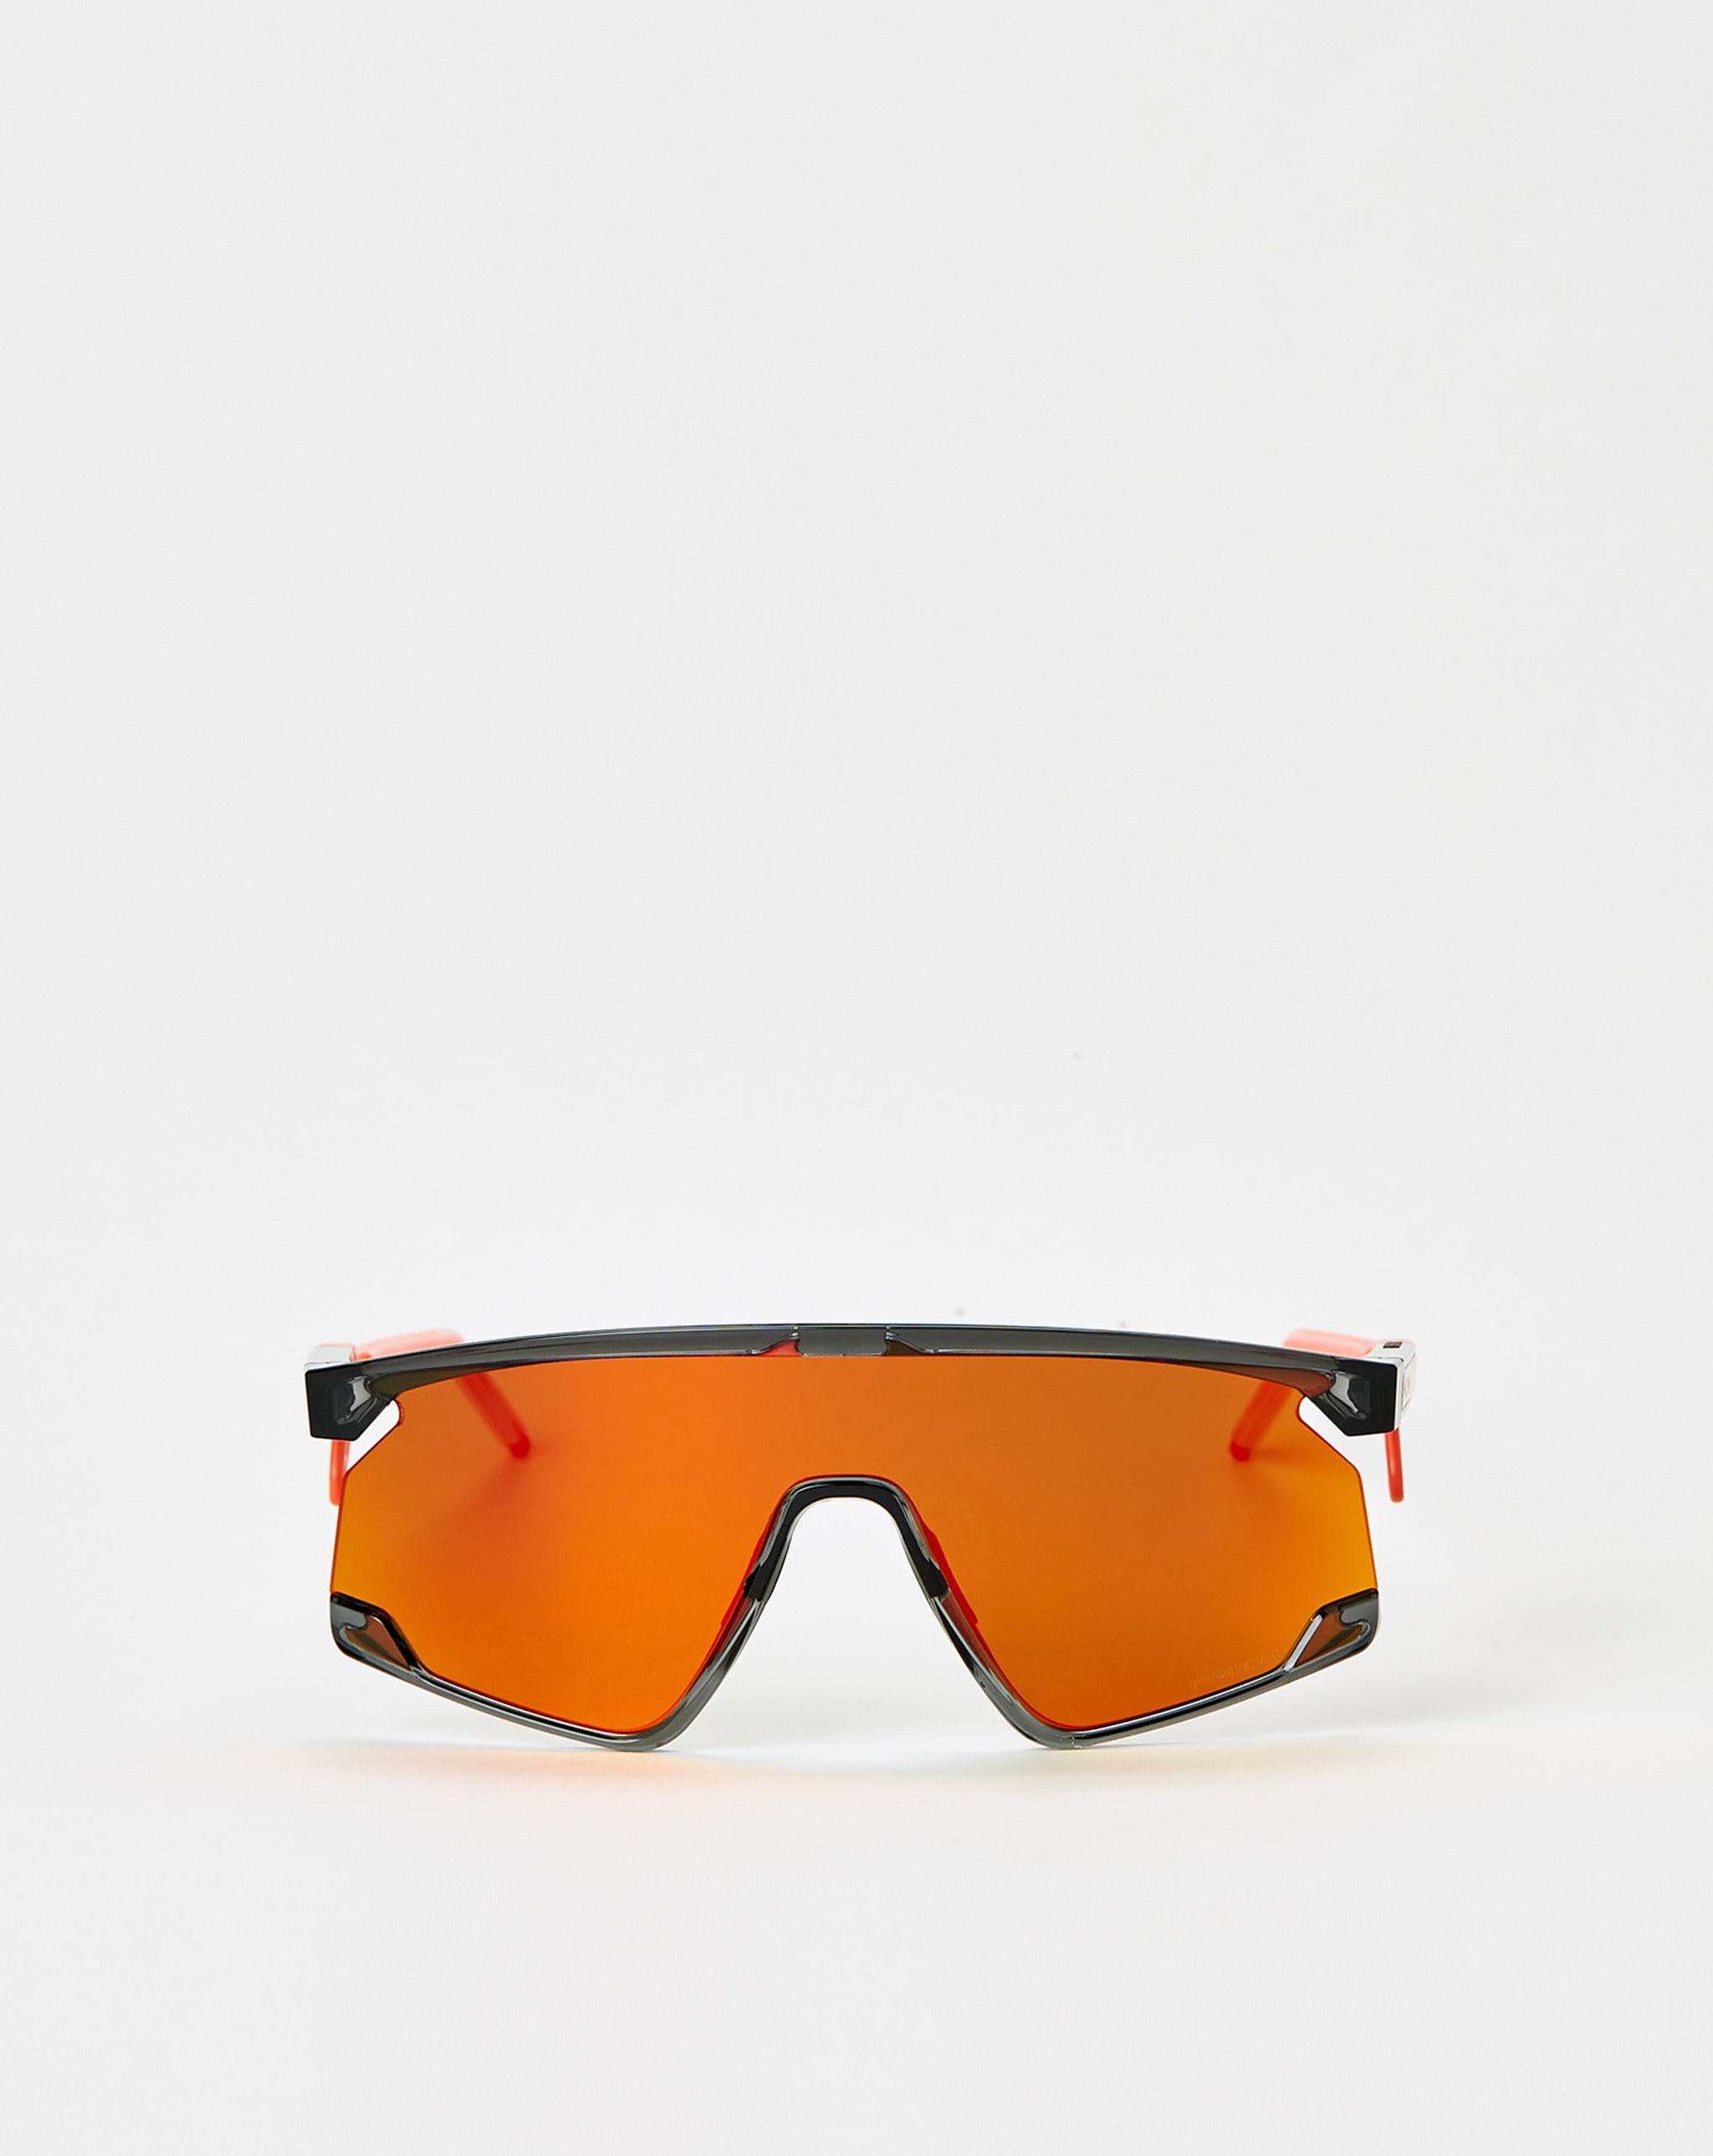 Oakley Hondo Tortoise retro Sunglasses  - Cheap Urlfreeze Jordan outlet